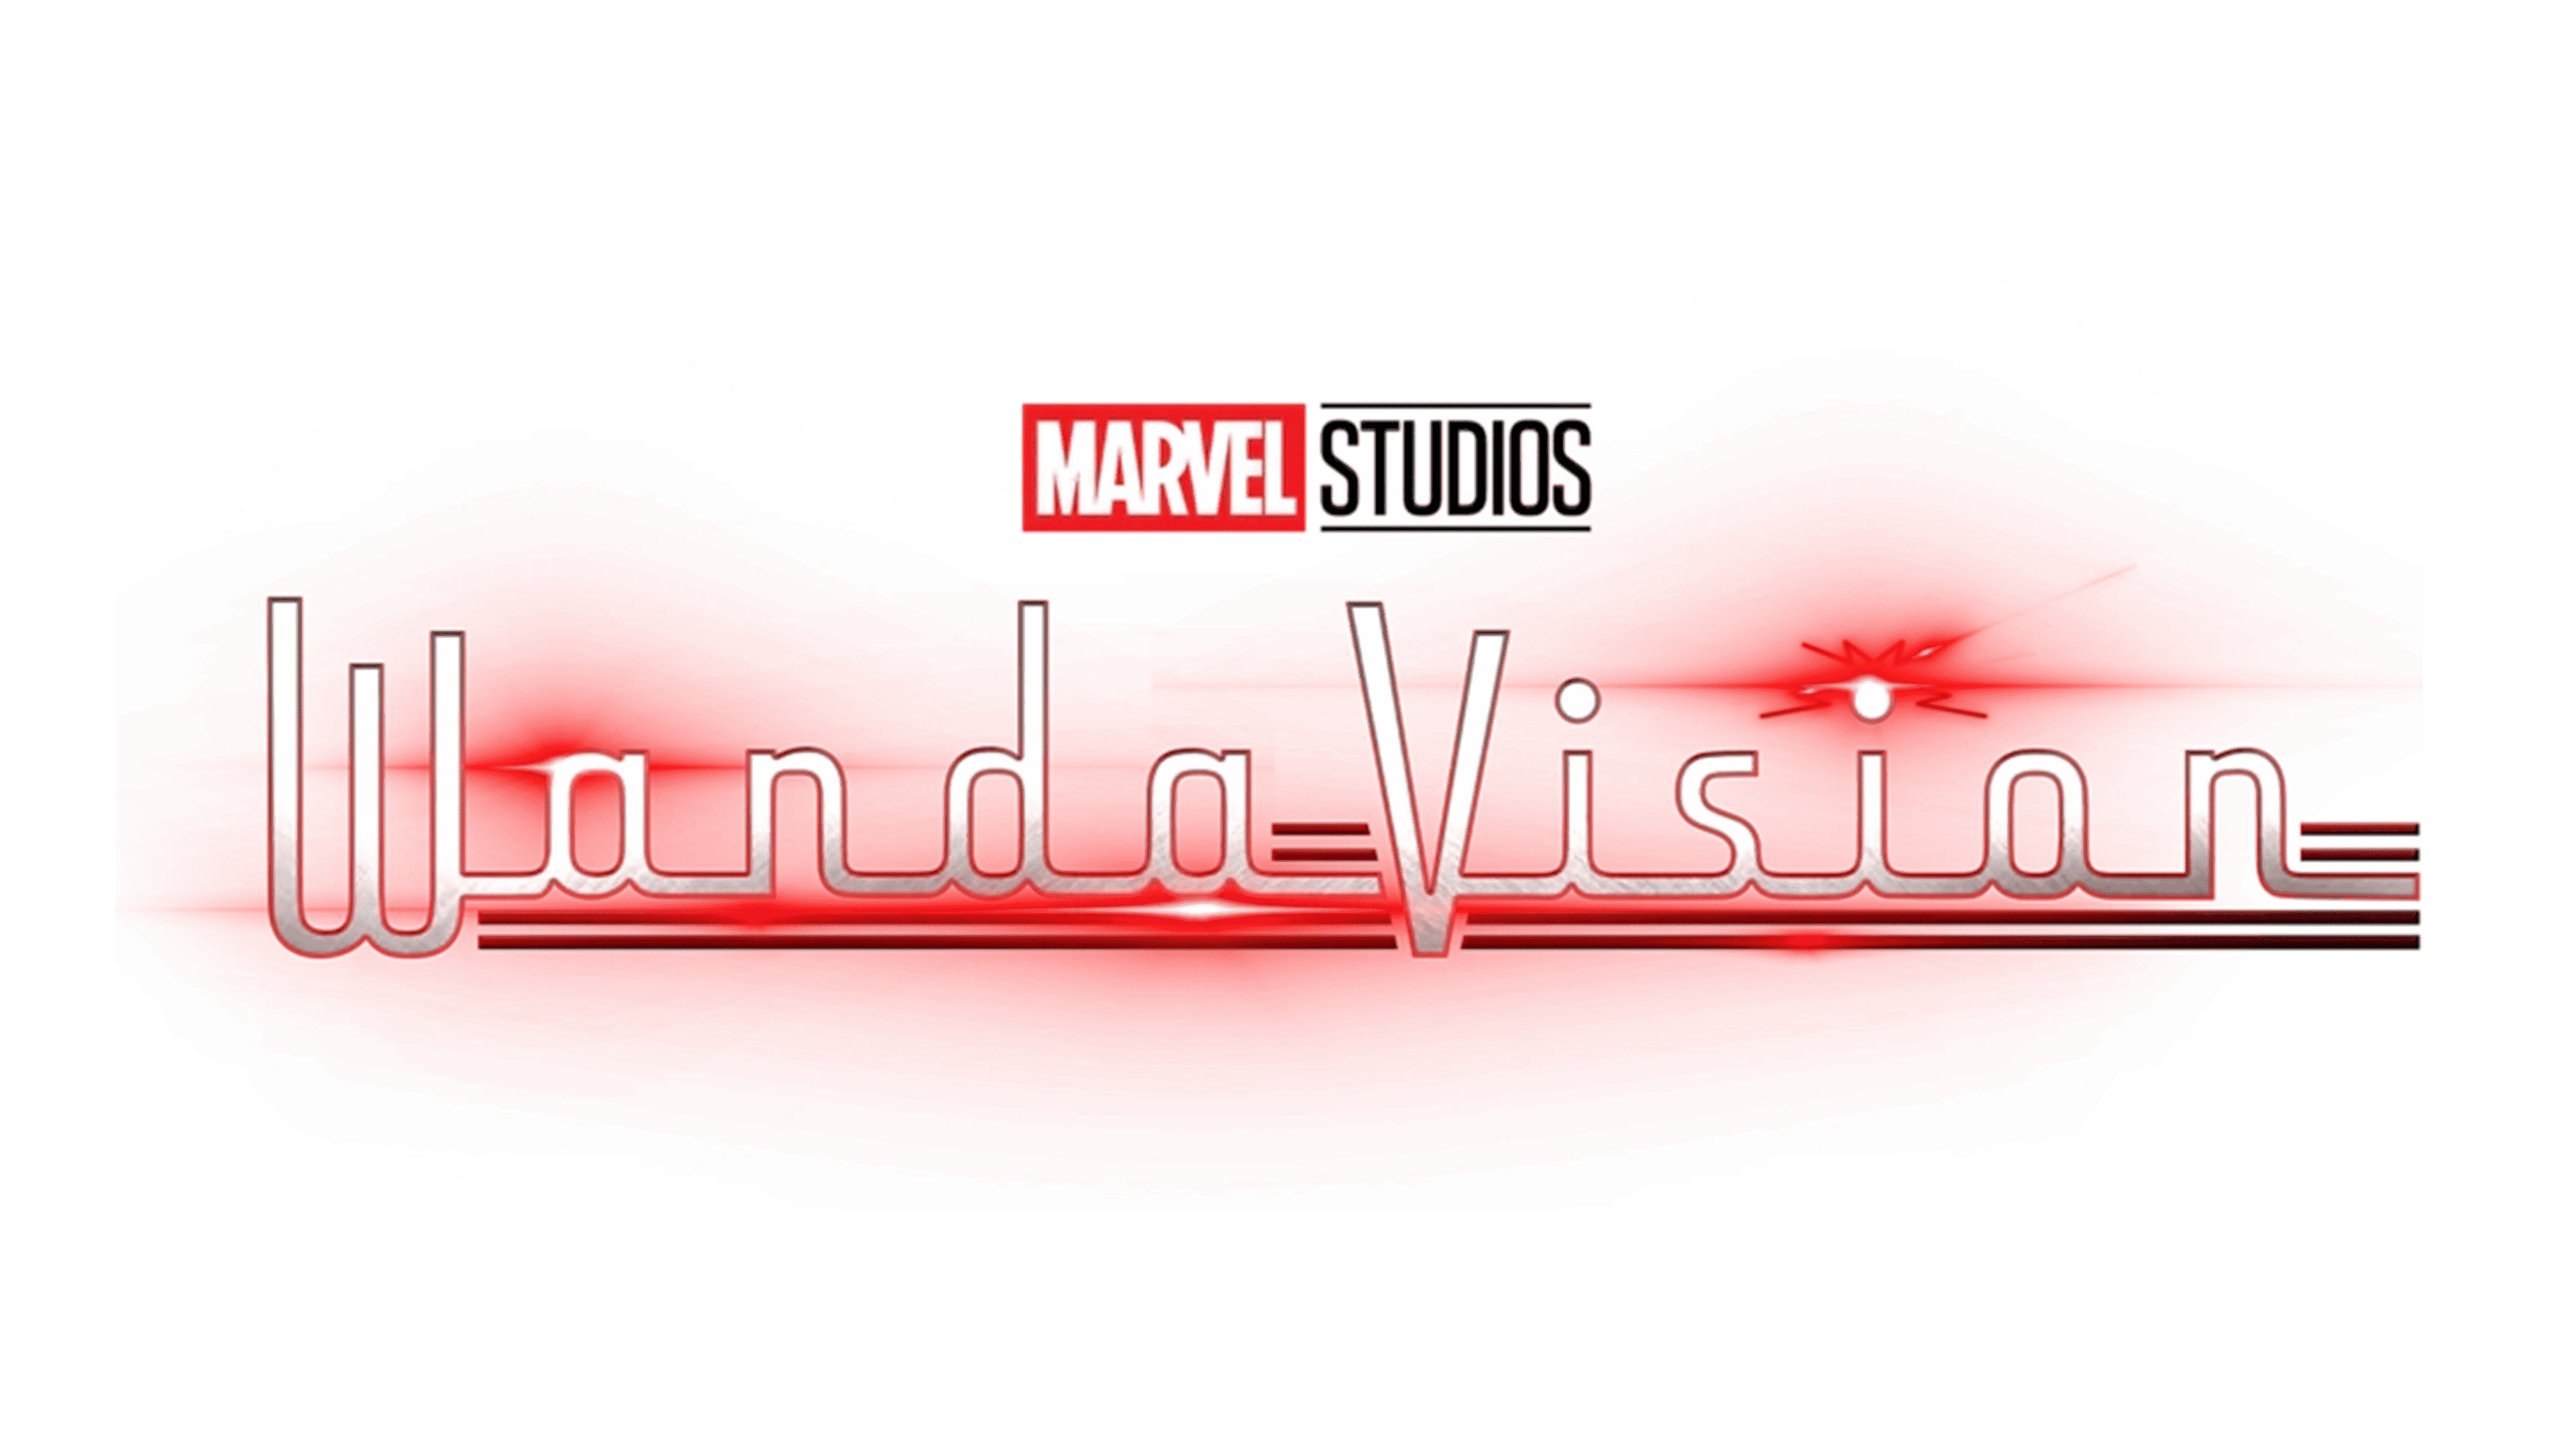 Wanda_Vision